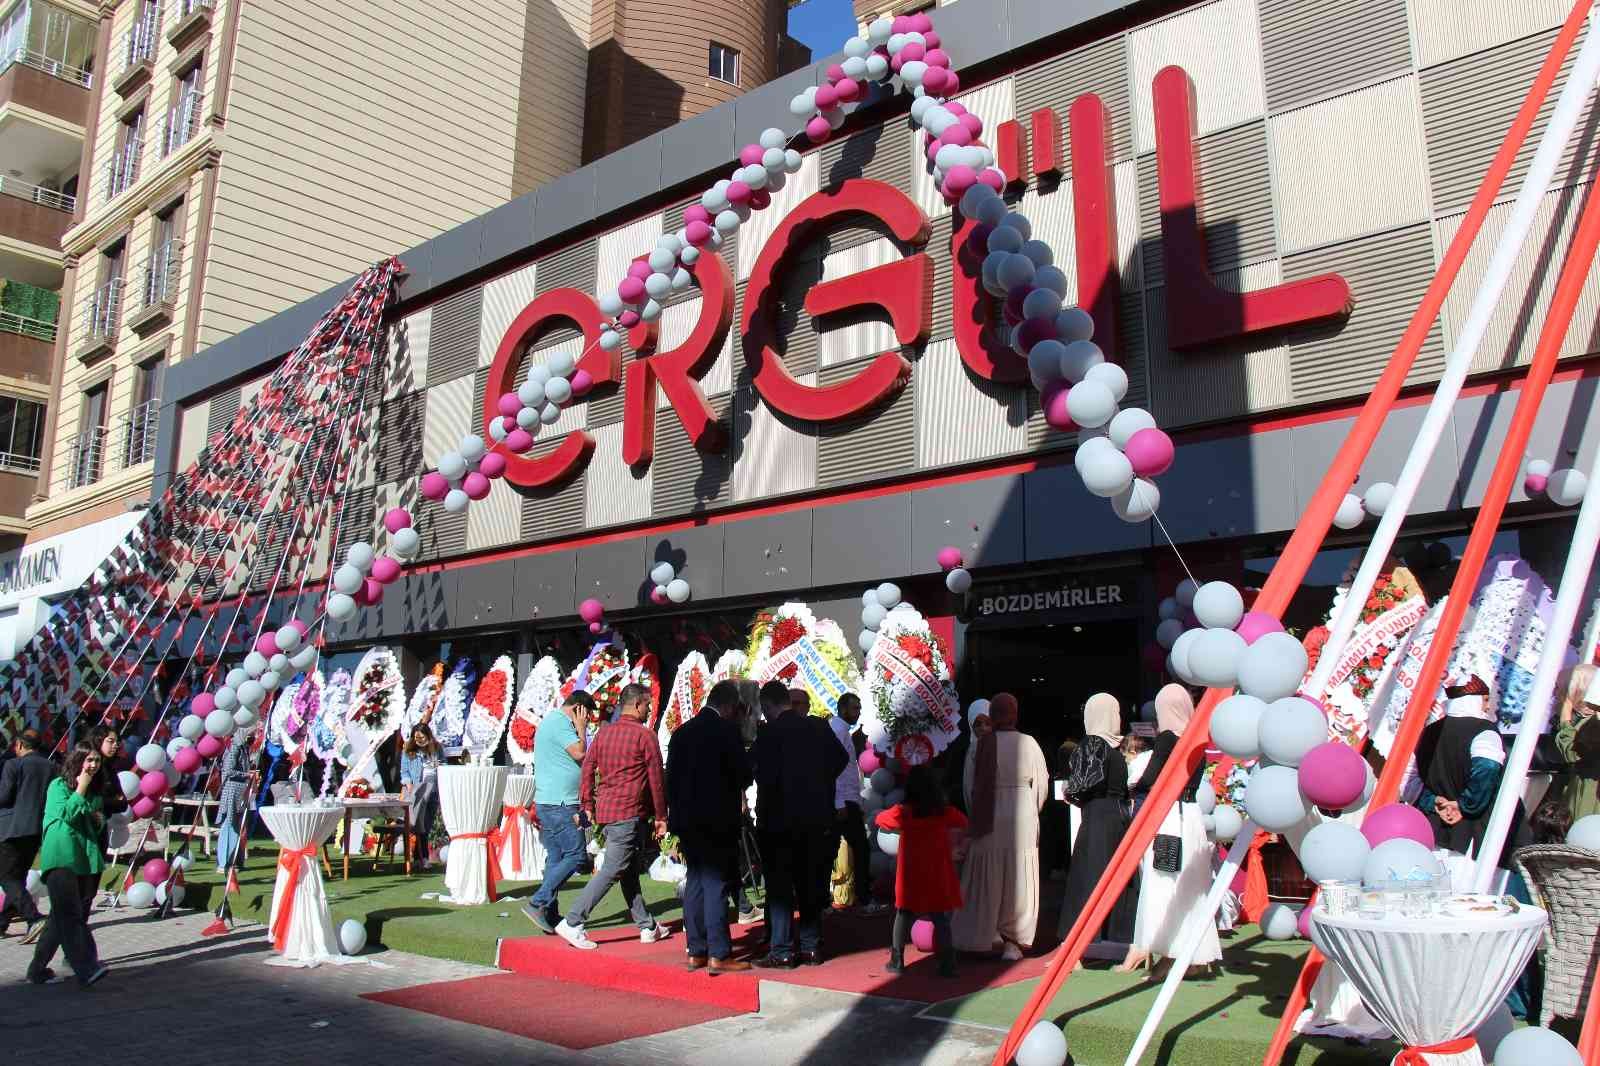 Mardin’in en büyük mobilya mağazası açıldı